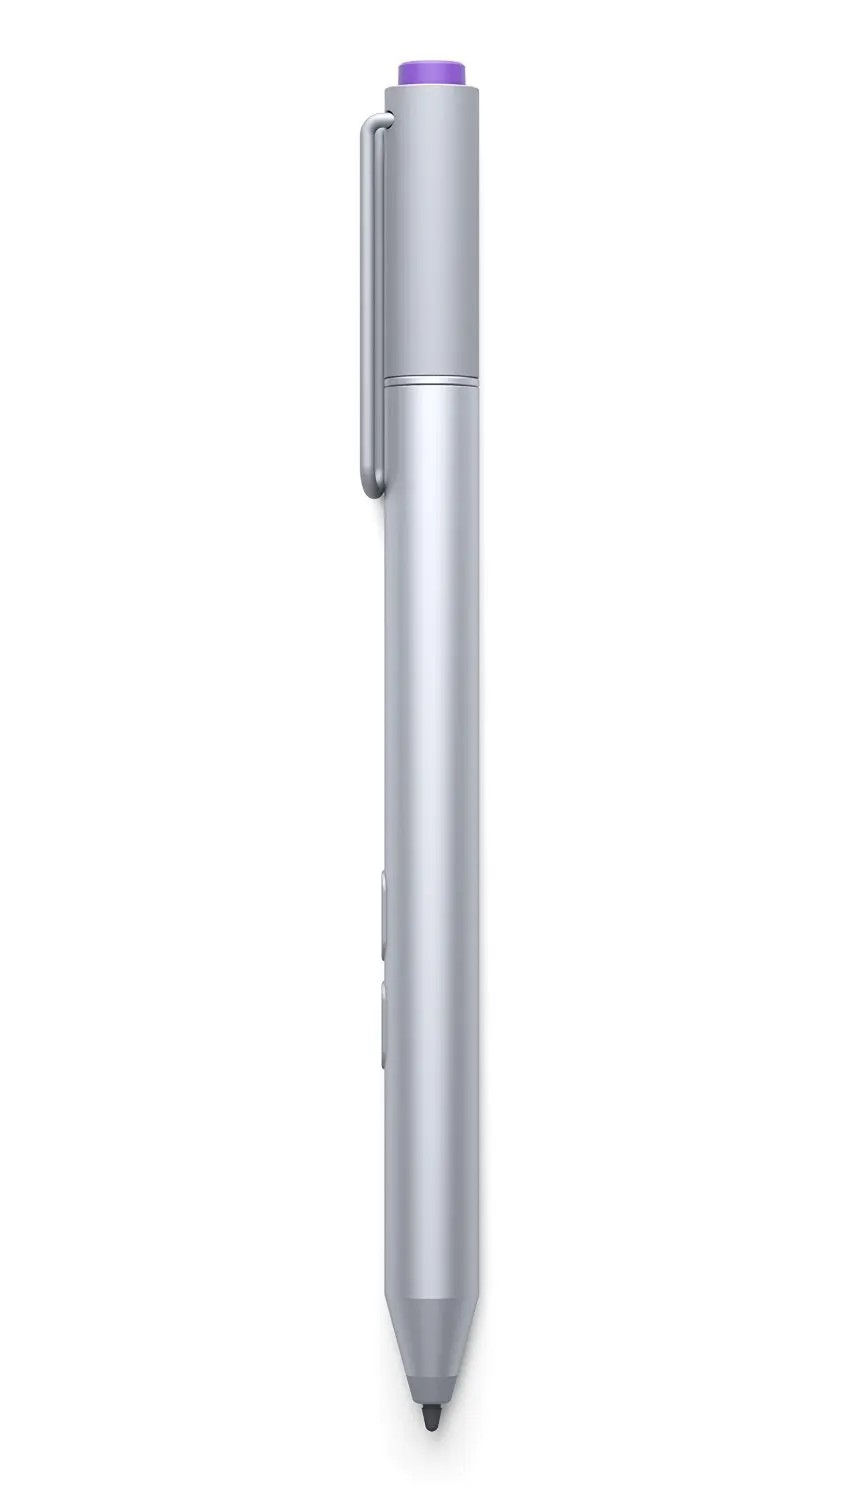 Беспроводной Bluetooth 4,0 N-trig стилус для microsoft Surface Pro 3 Ручка+ сенсорный запасной емкостный электромагнитный стилус